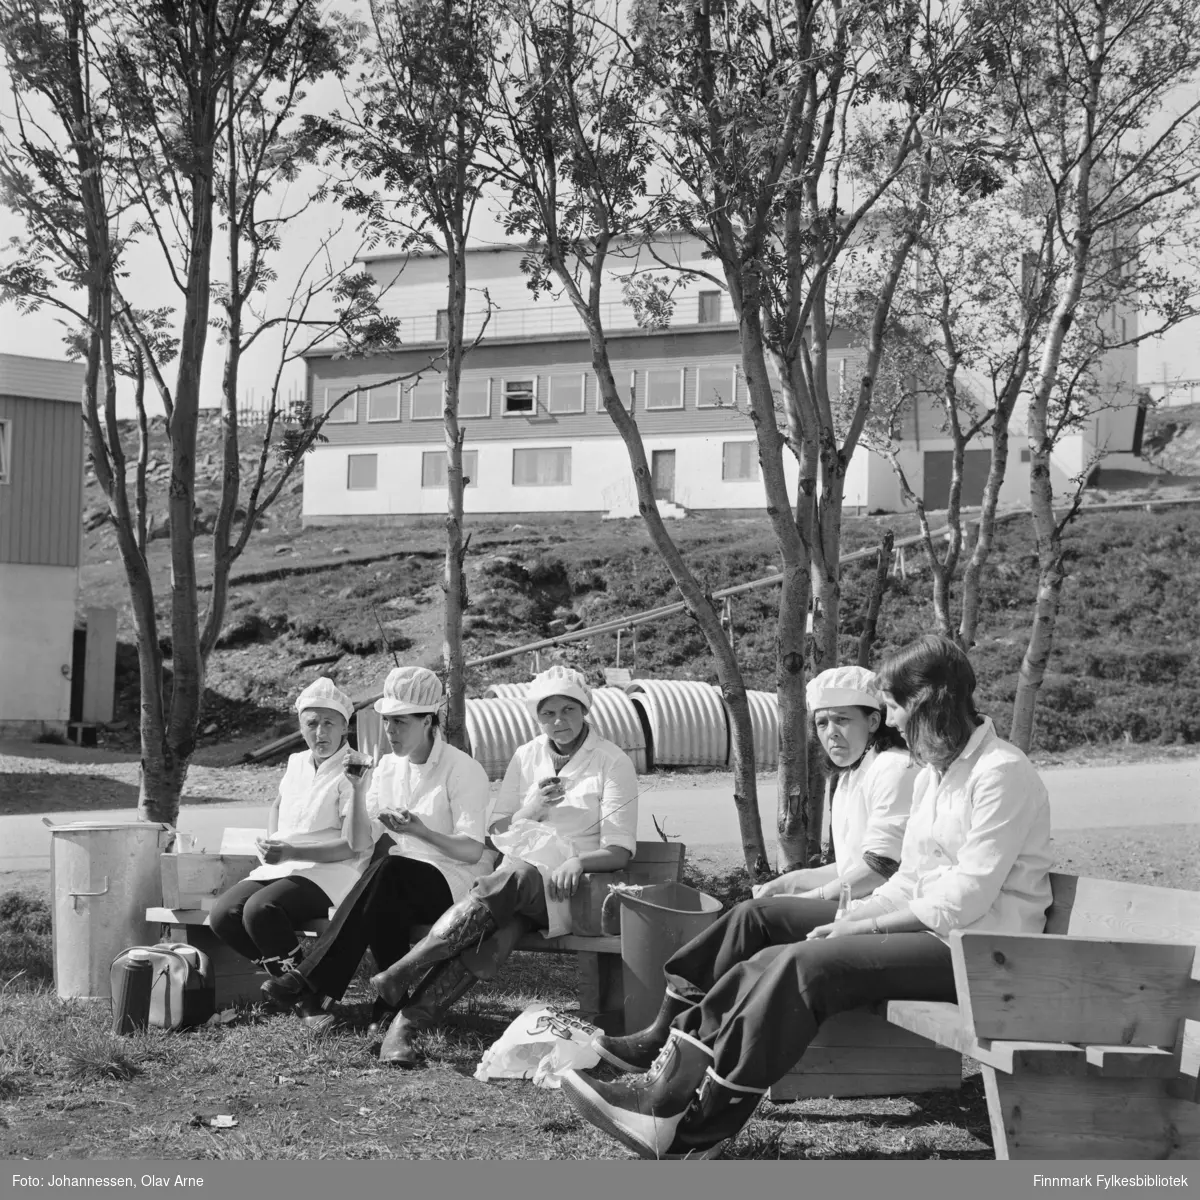 Filetarbeidere tar "5 minutter" fra arbeid i Båtsfjord i Finnmark på tidlig 1970-tallet

Fra venstre Doris Walderhaug (1933 - ) og Bjørg Nystad

Resten av kvinnene er ukjent 

Skansen i bakgrunnen
